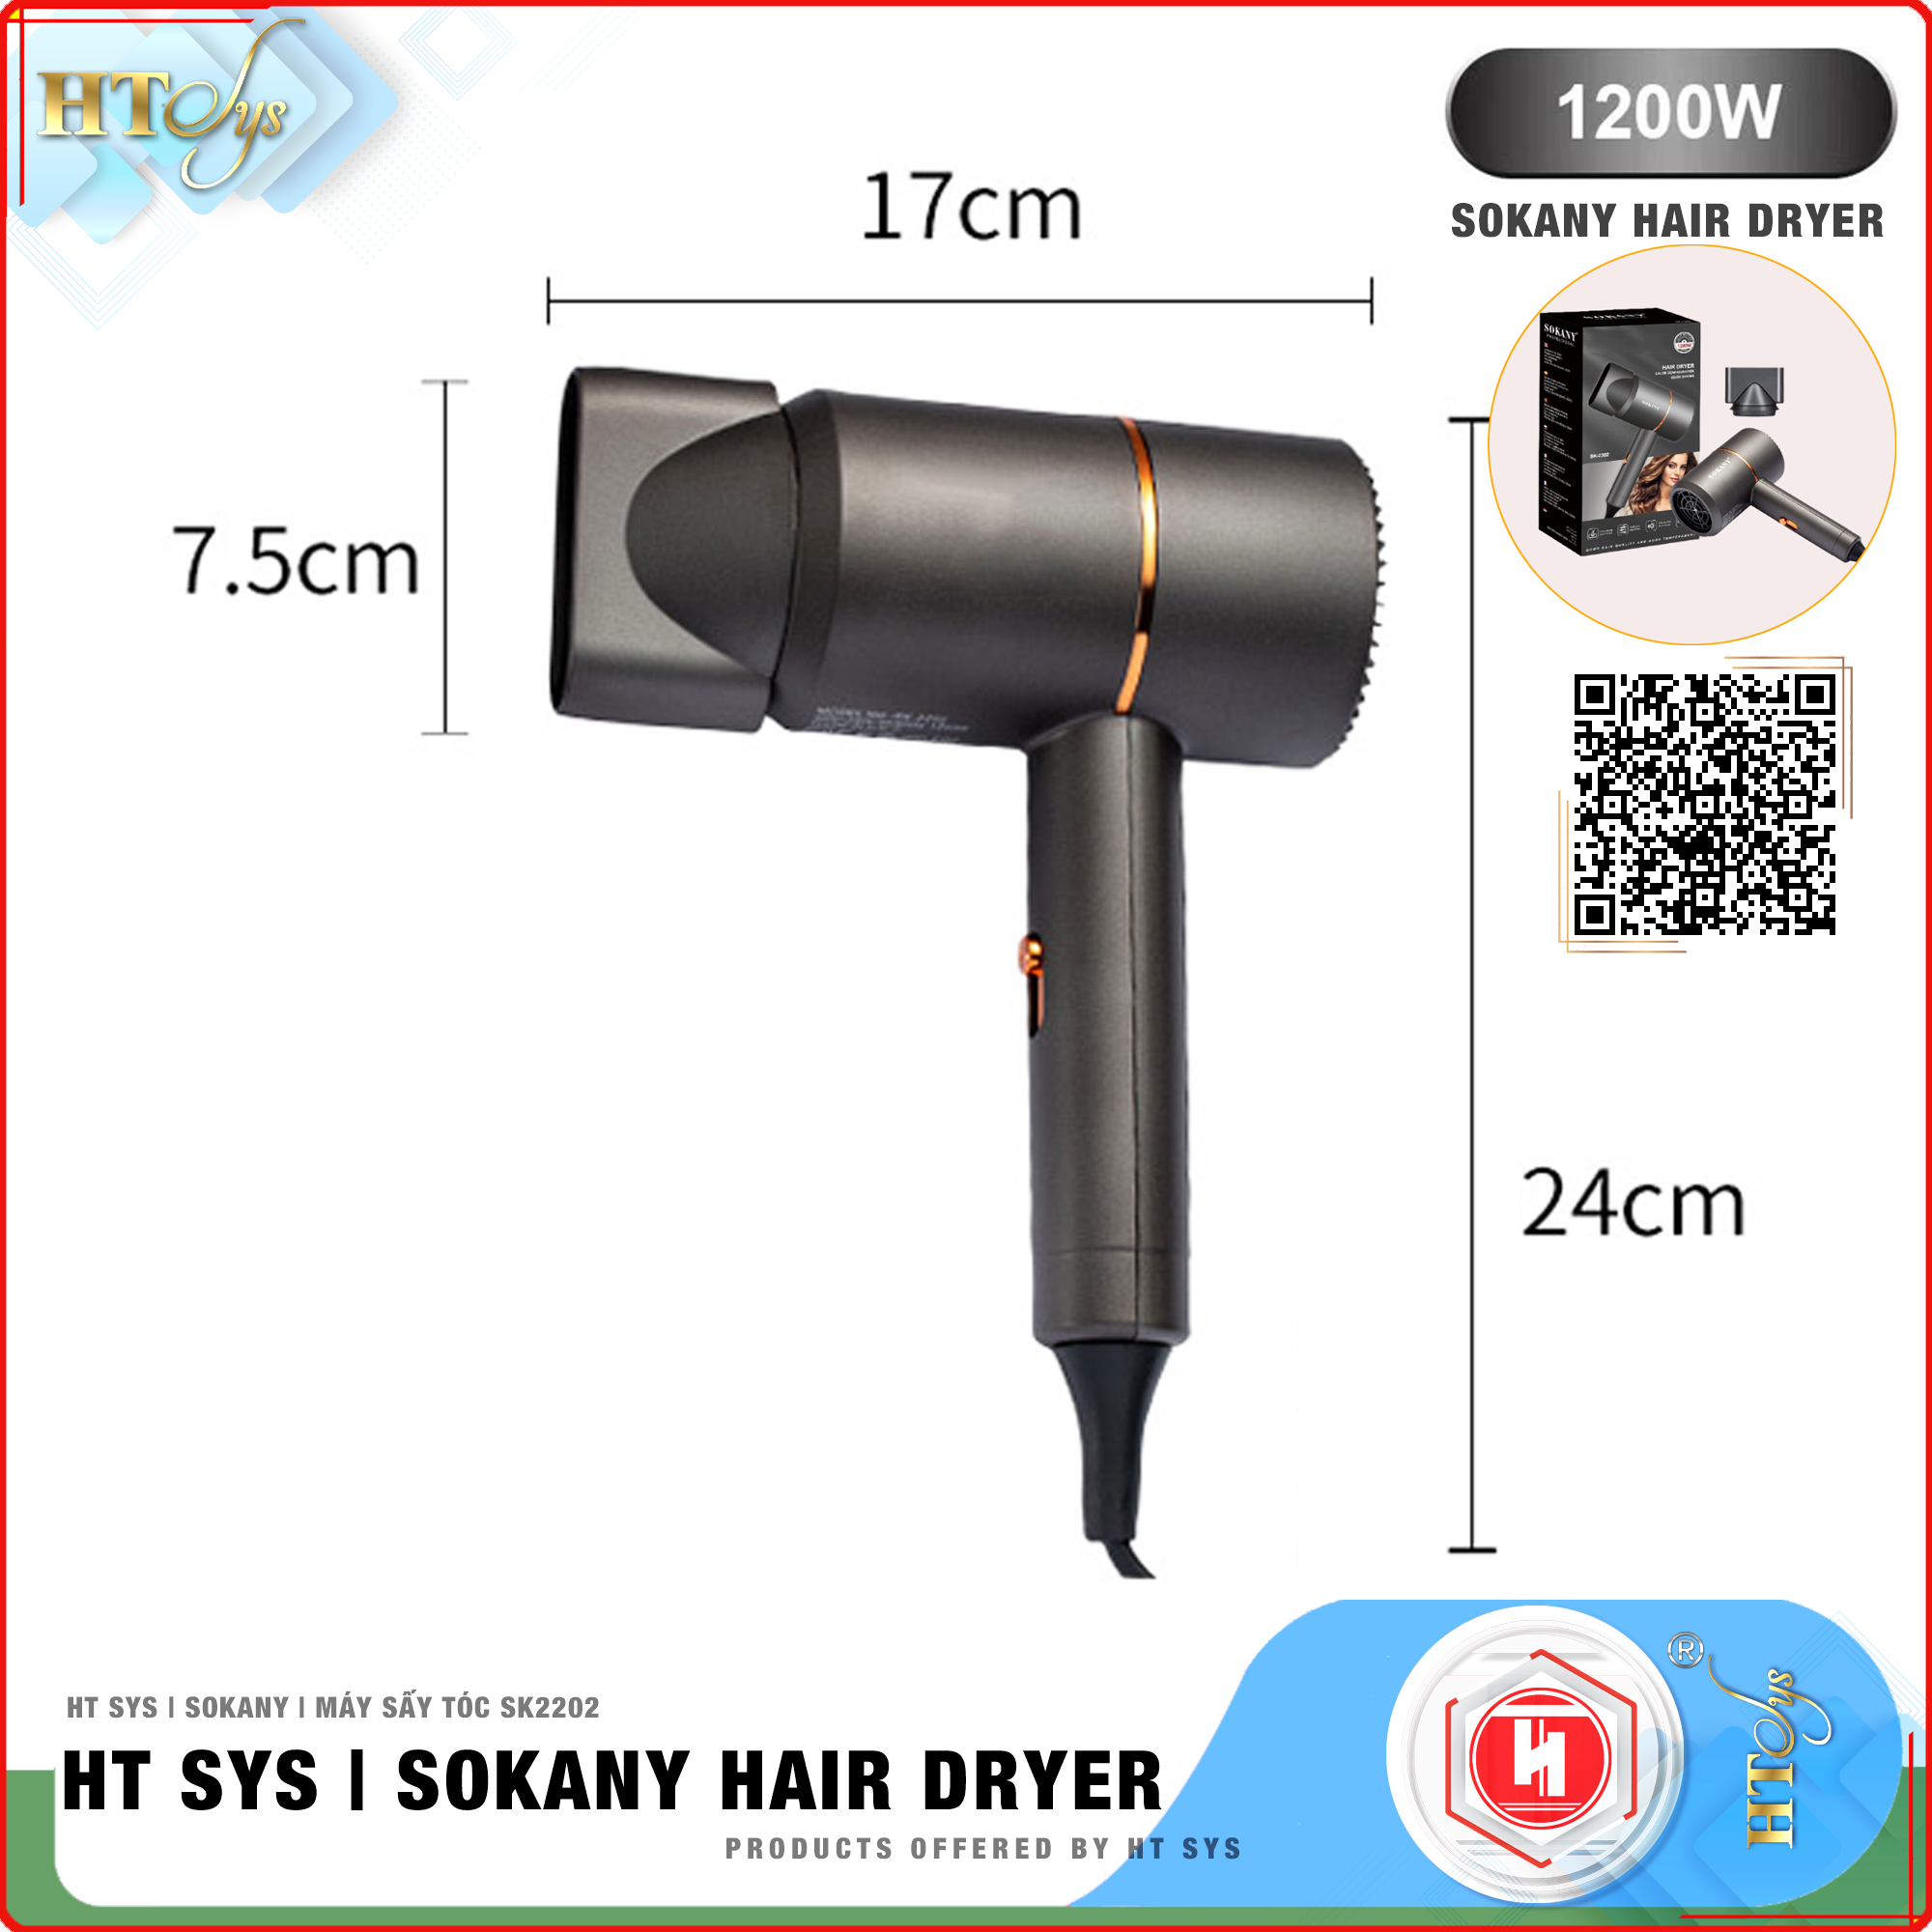 Máy sấy tóc ion âm HT SYS - SOKANY2202 - Kiểu dáng sang trọng, tiện lợi, công suất 1200W chuyên dụng tại nhà và hair salon - Máy sấy bổ sung ion dưỡng ẩm làm mềm mượt tóc - [Hàng Nhập Khẩu]